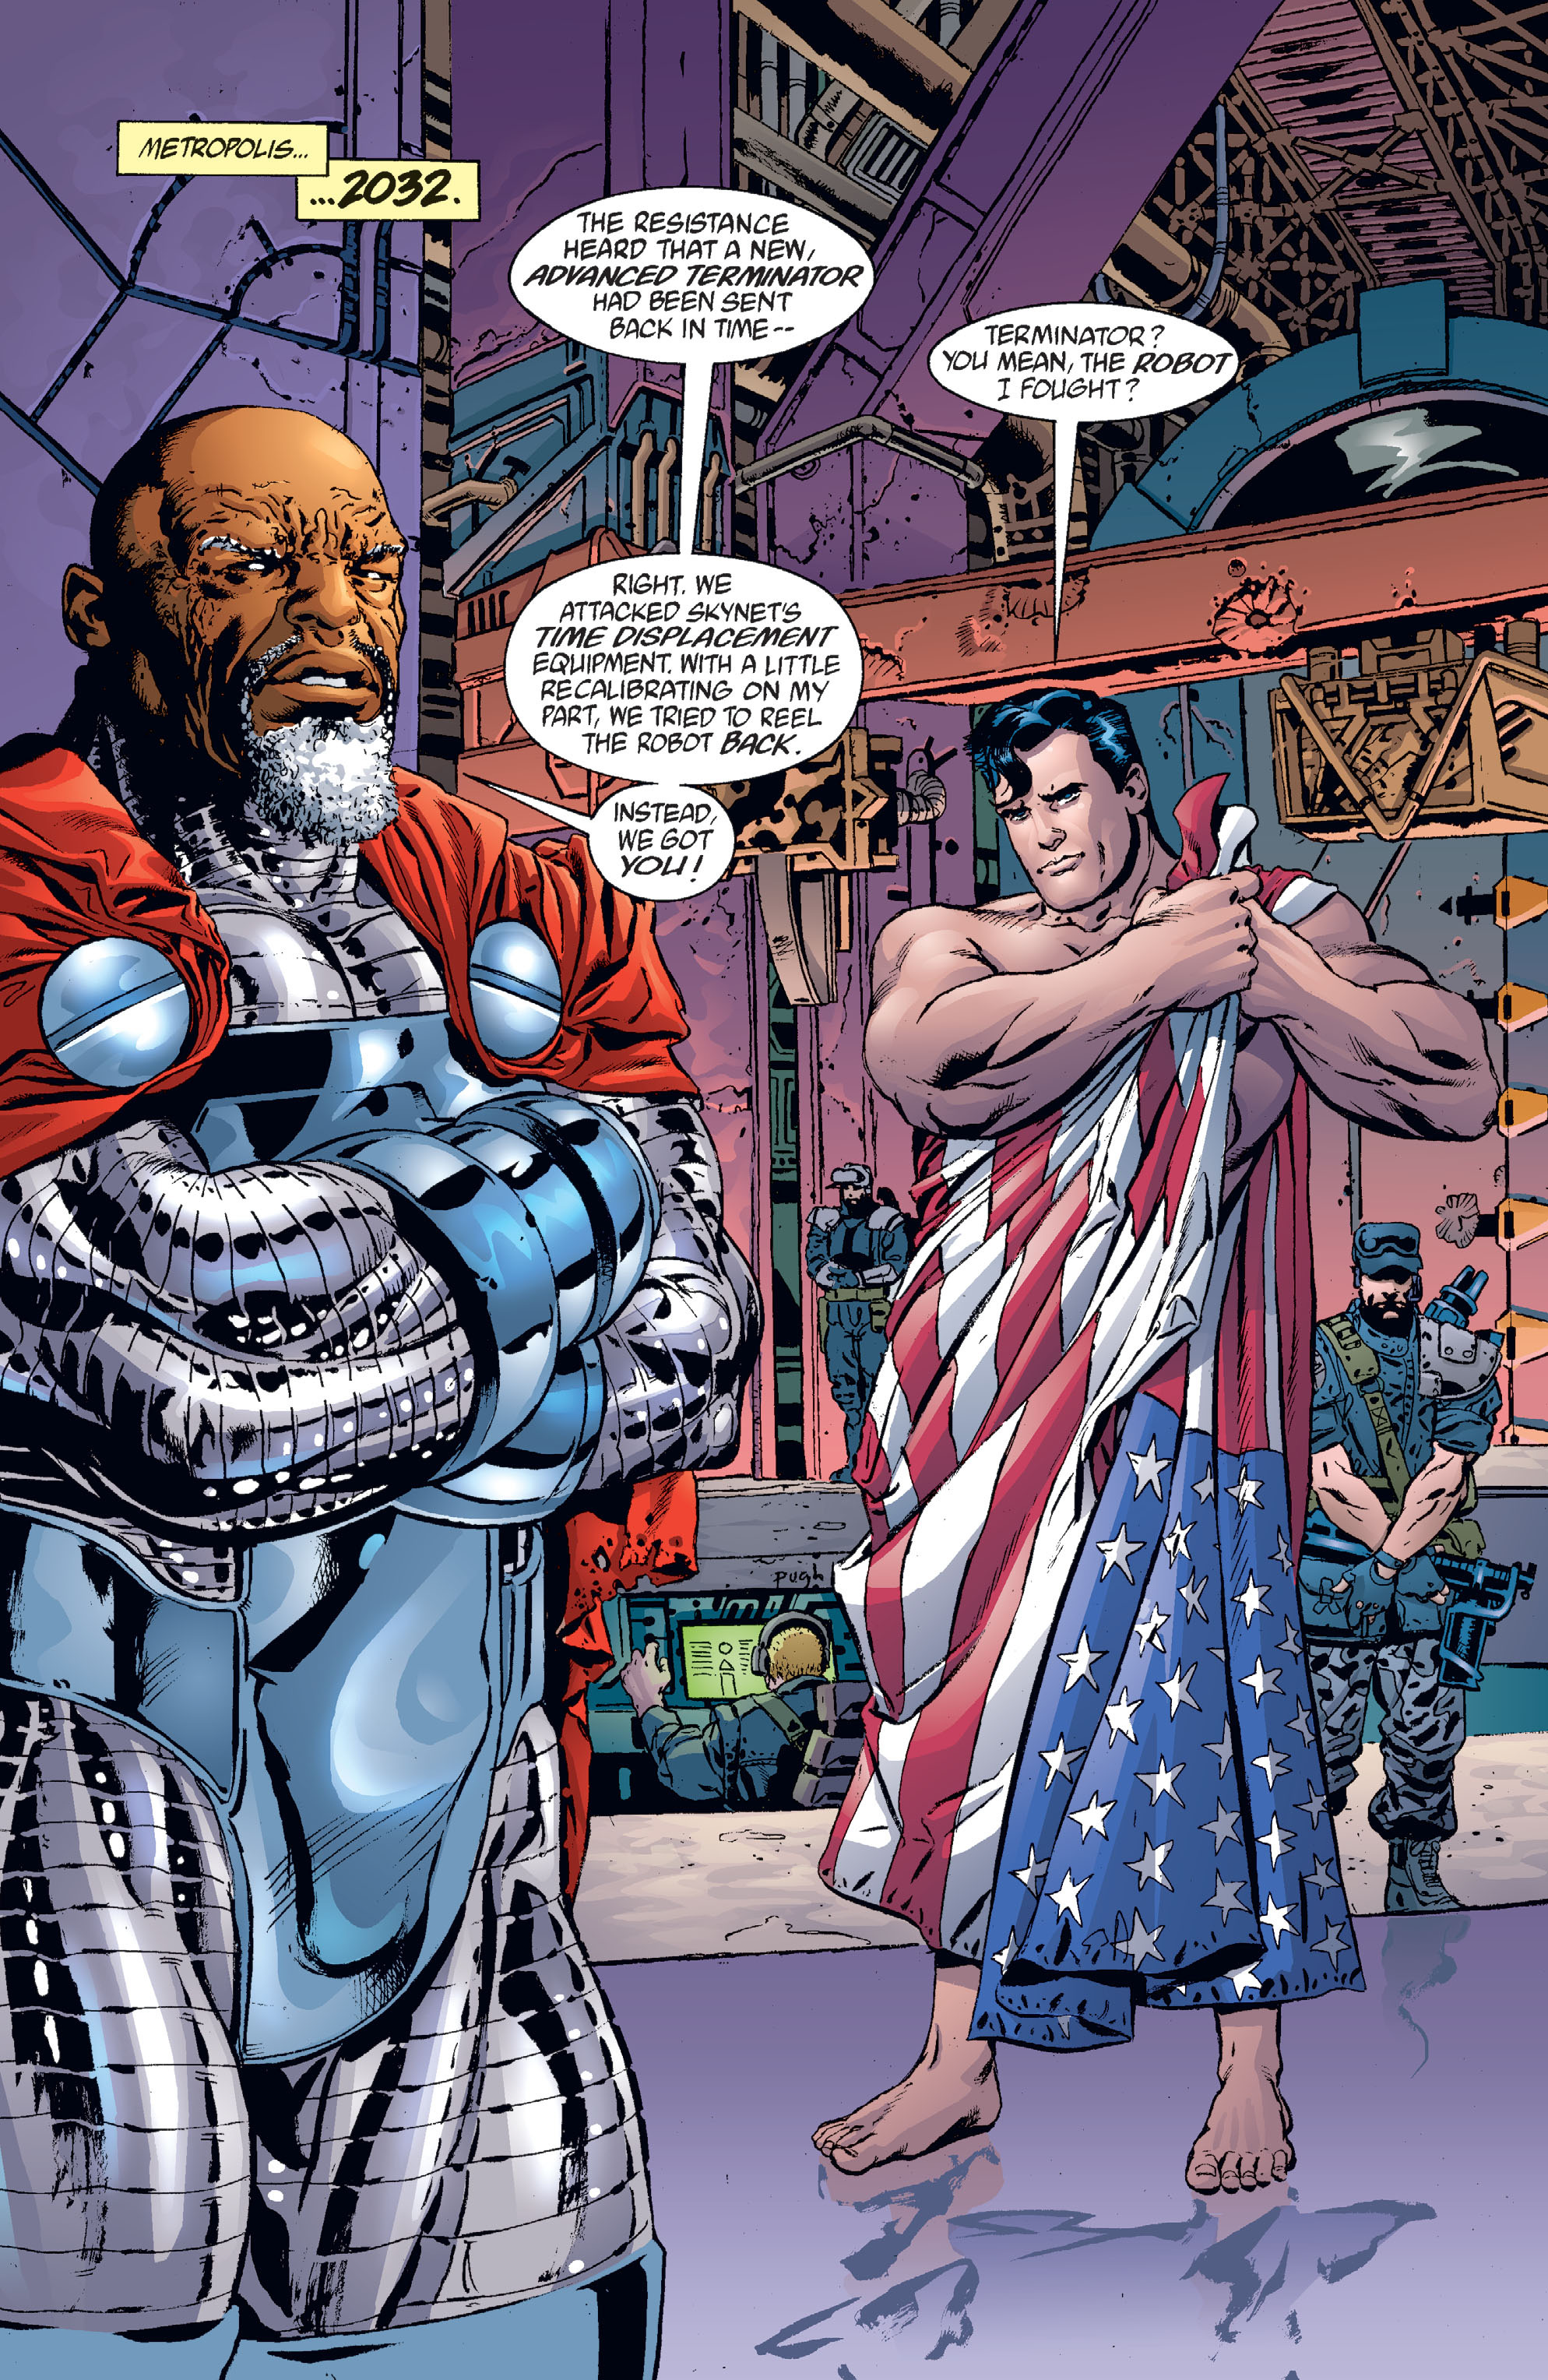 DC Comics/Dark Horse Comics: Justice League Full #1 - English 172